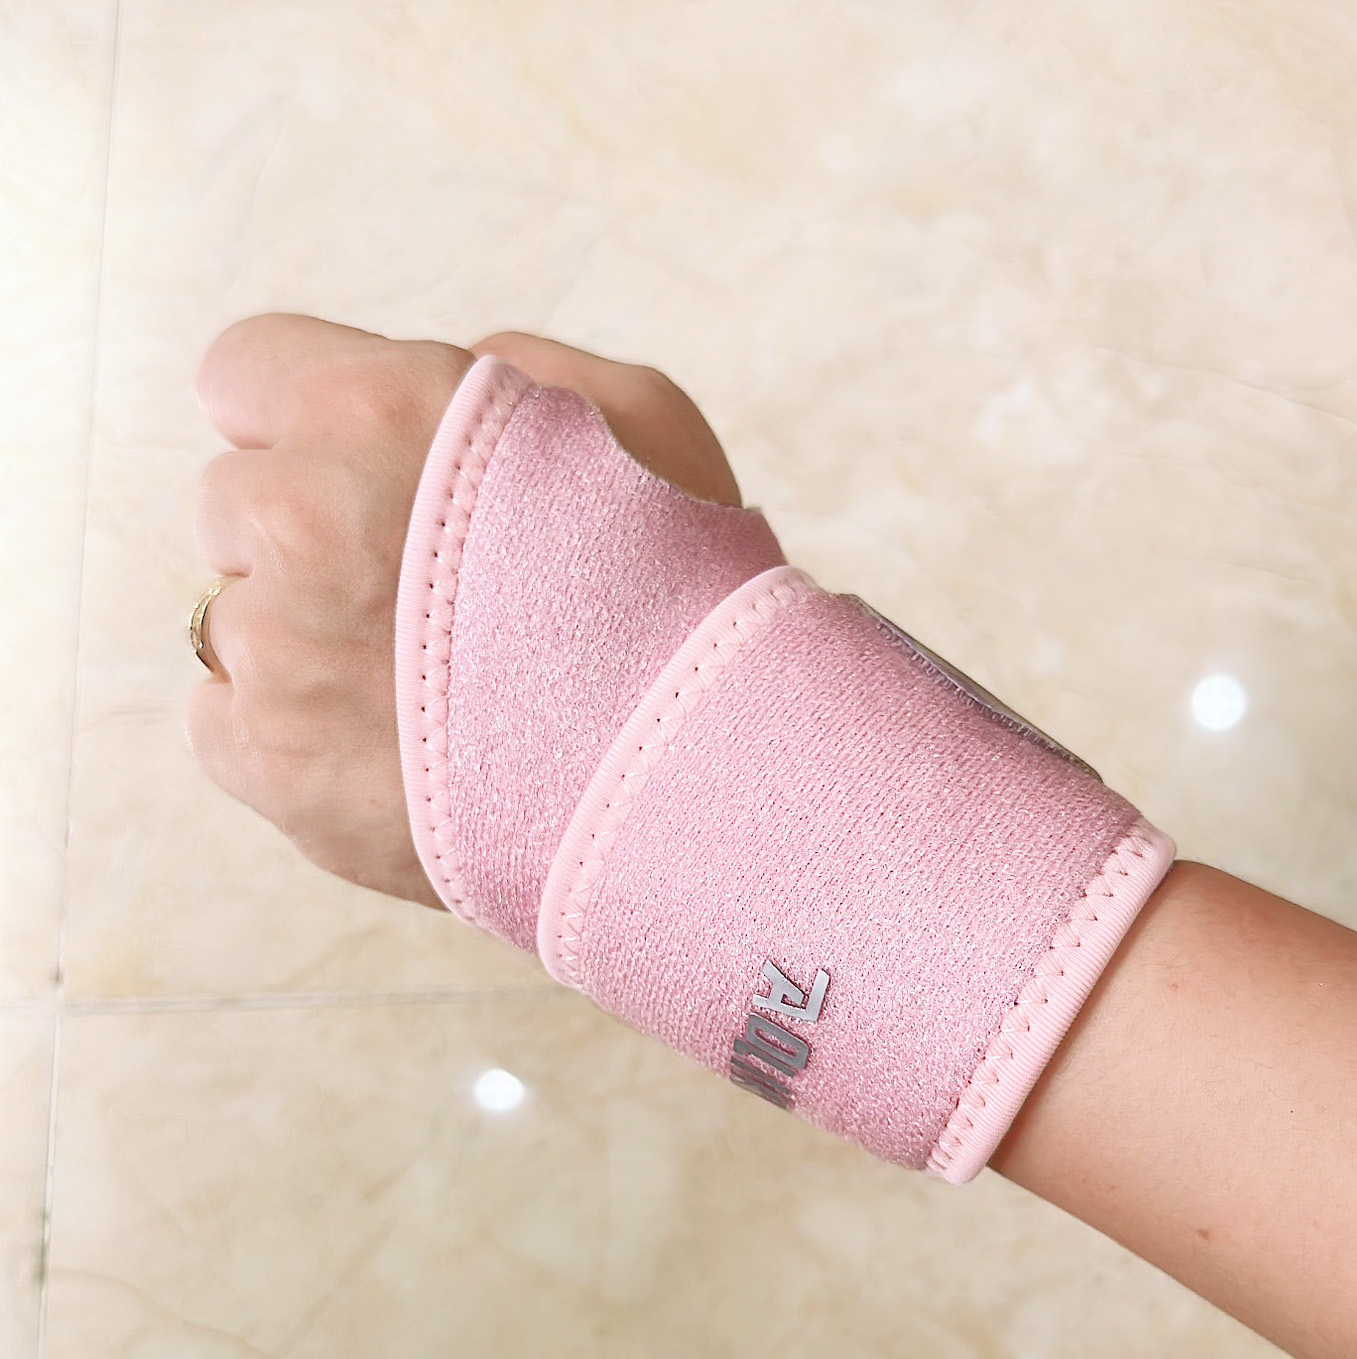 Đai Quấn Cổ Tay Xỏ Ngón Aolikes - Hỗ trợ bảo vệ cổ tay, tránh chấn thương cổ tay khi tập Gym, Yoga